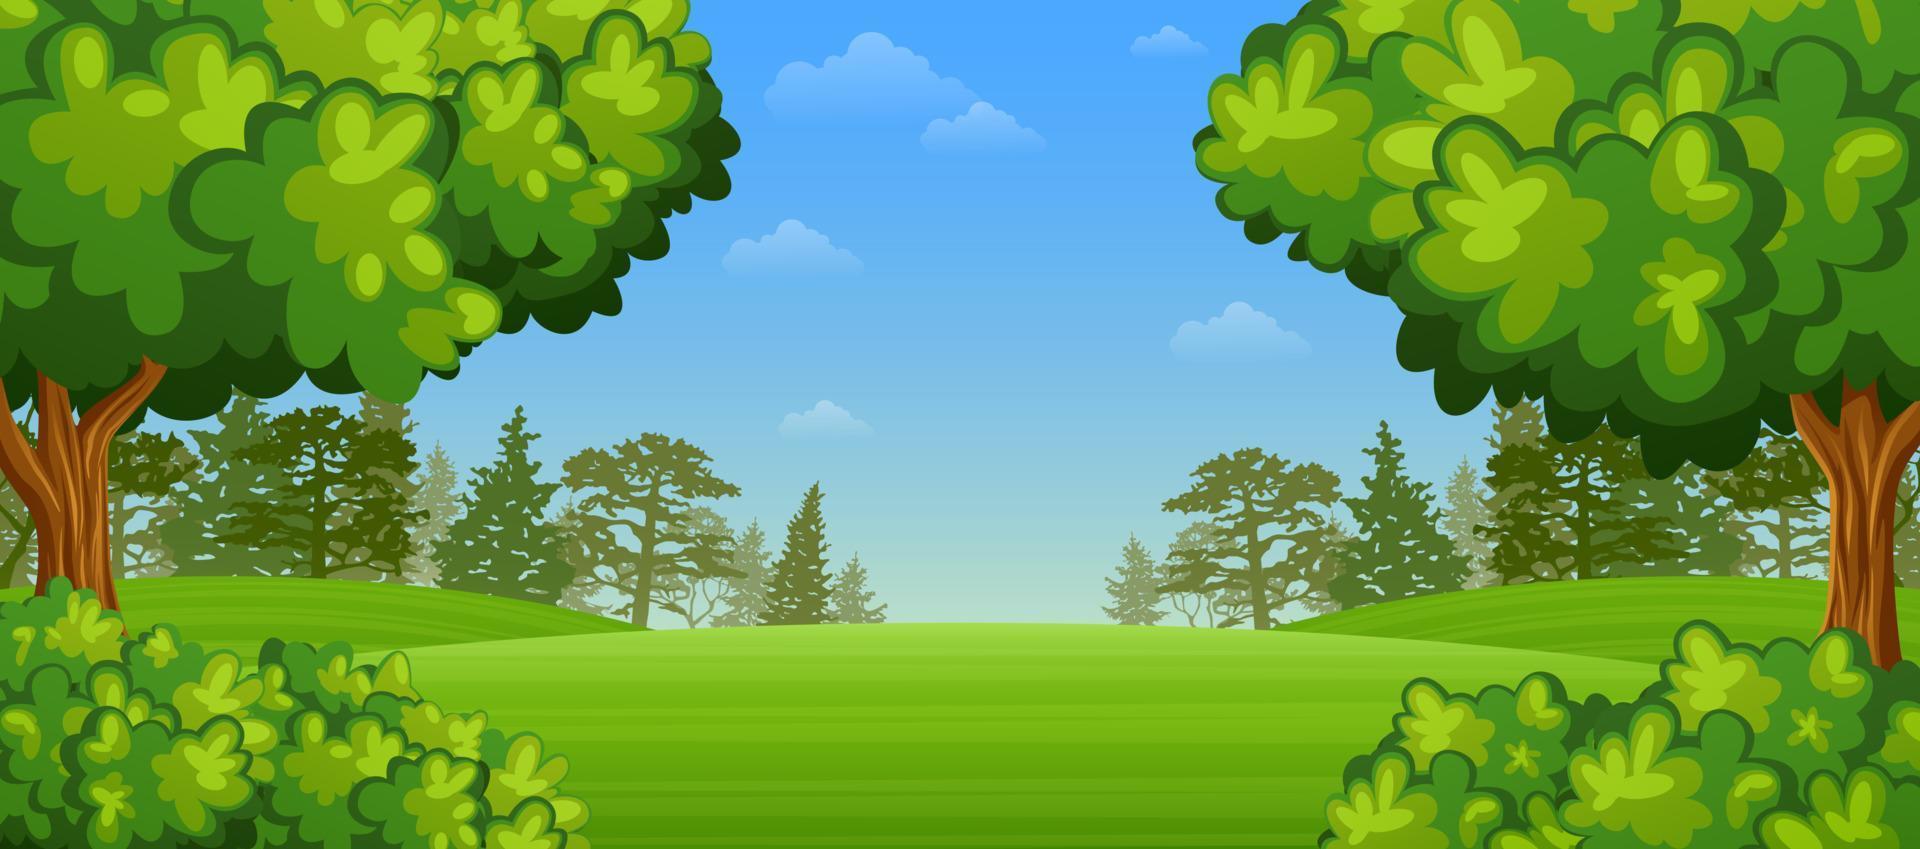 groen landschap met bergen en bomen vector